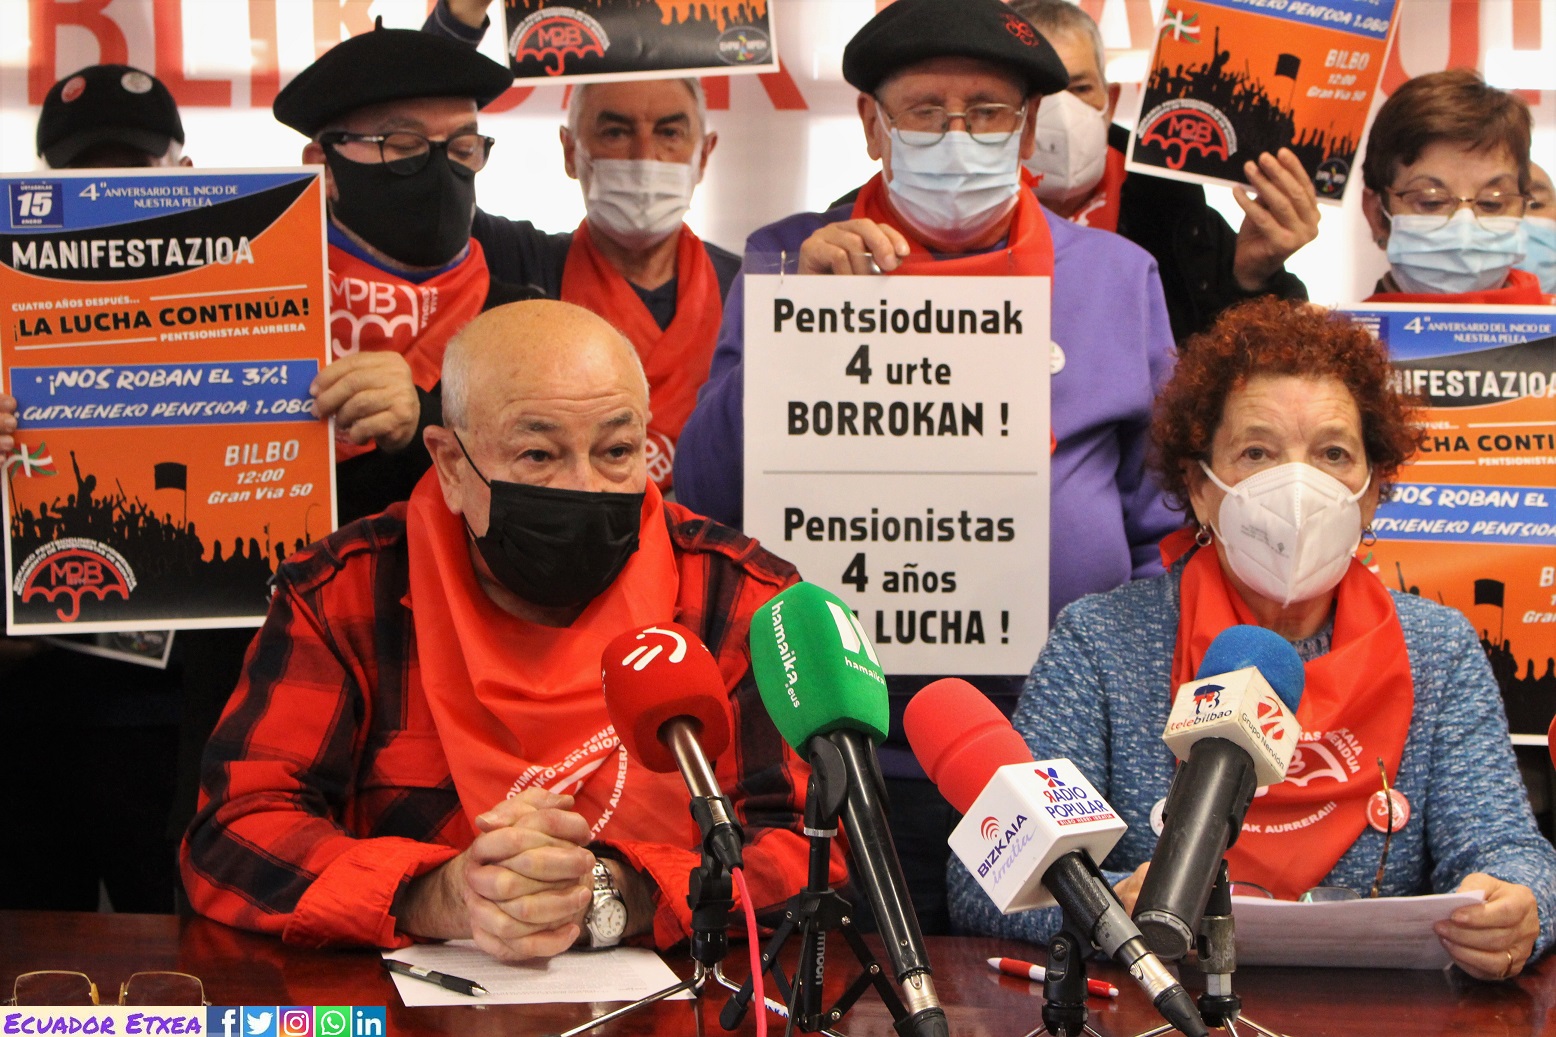 pensionistas-vascos-bilbao-movilizaciones-cuarto-aniversario-cuatro-4-años-lucha-batalla-ayuntamiento-euskalherria